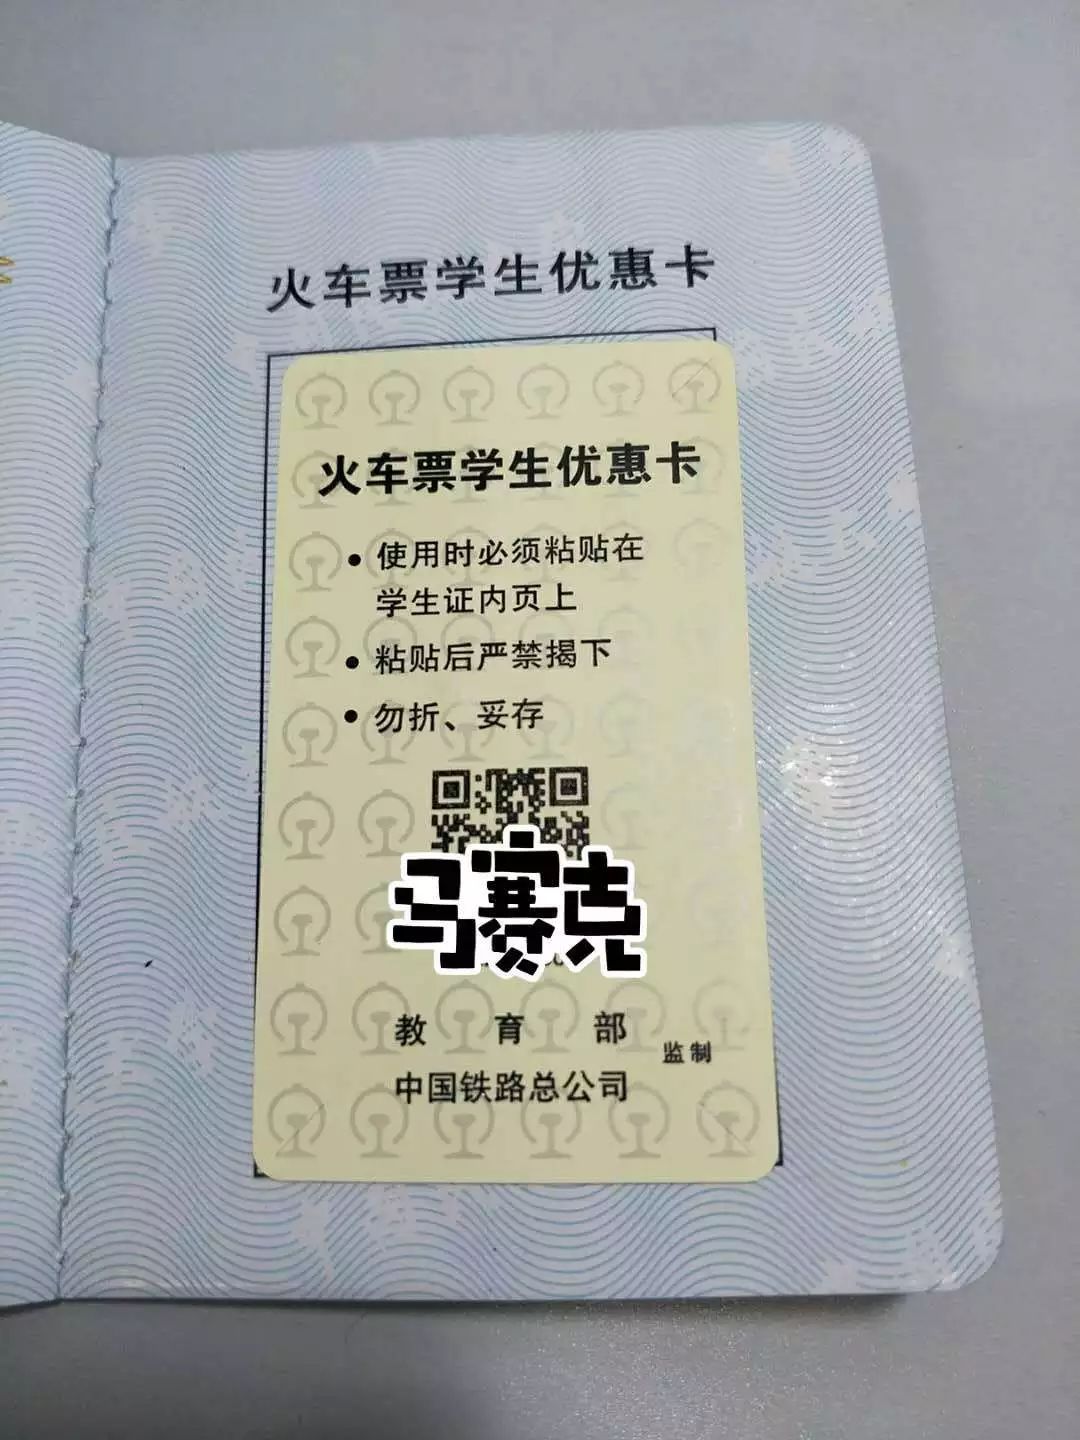 【大事记】学生证磁卡保护